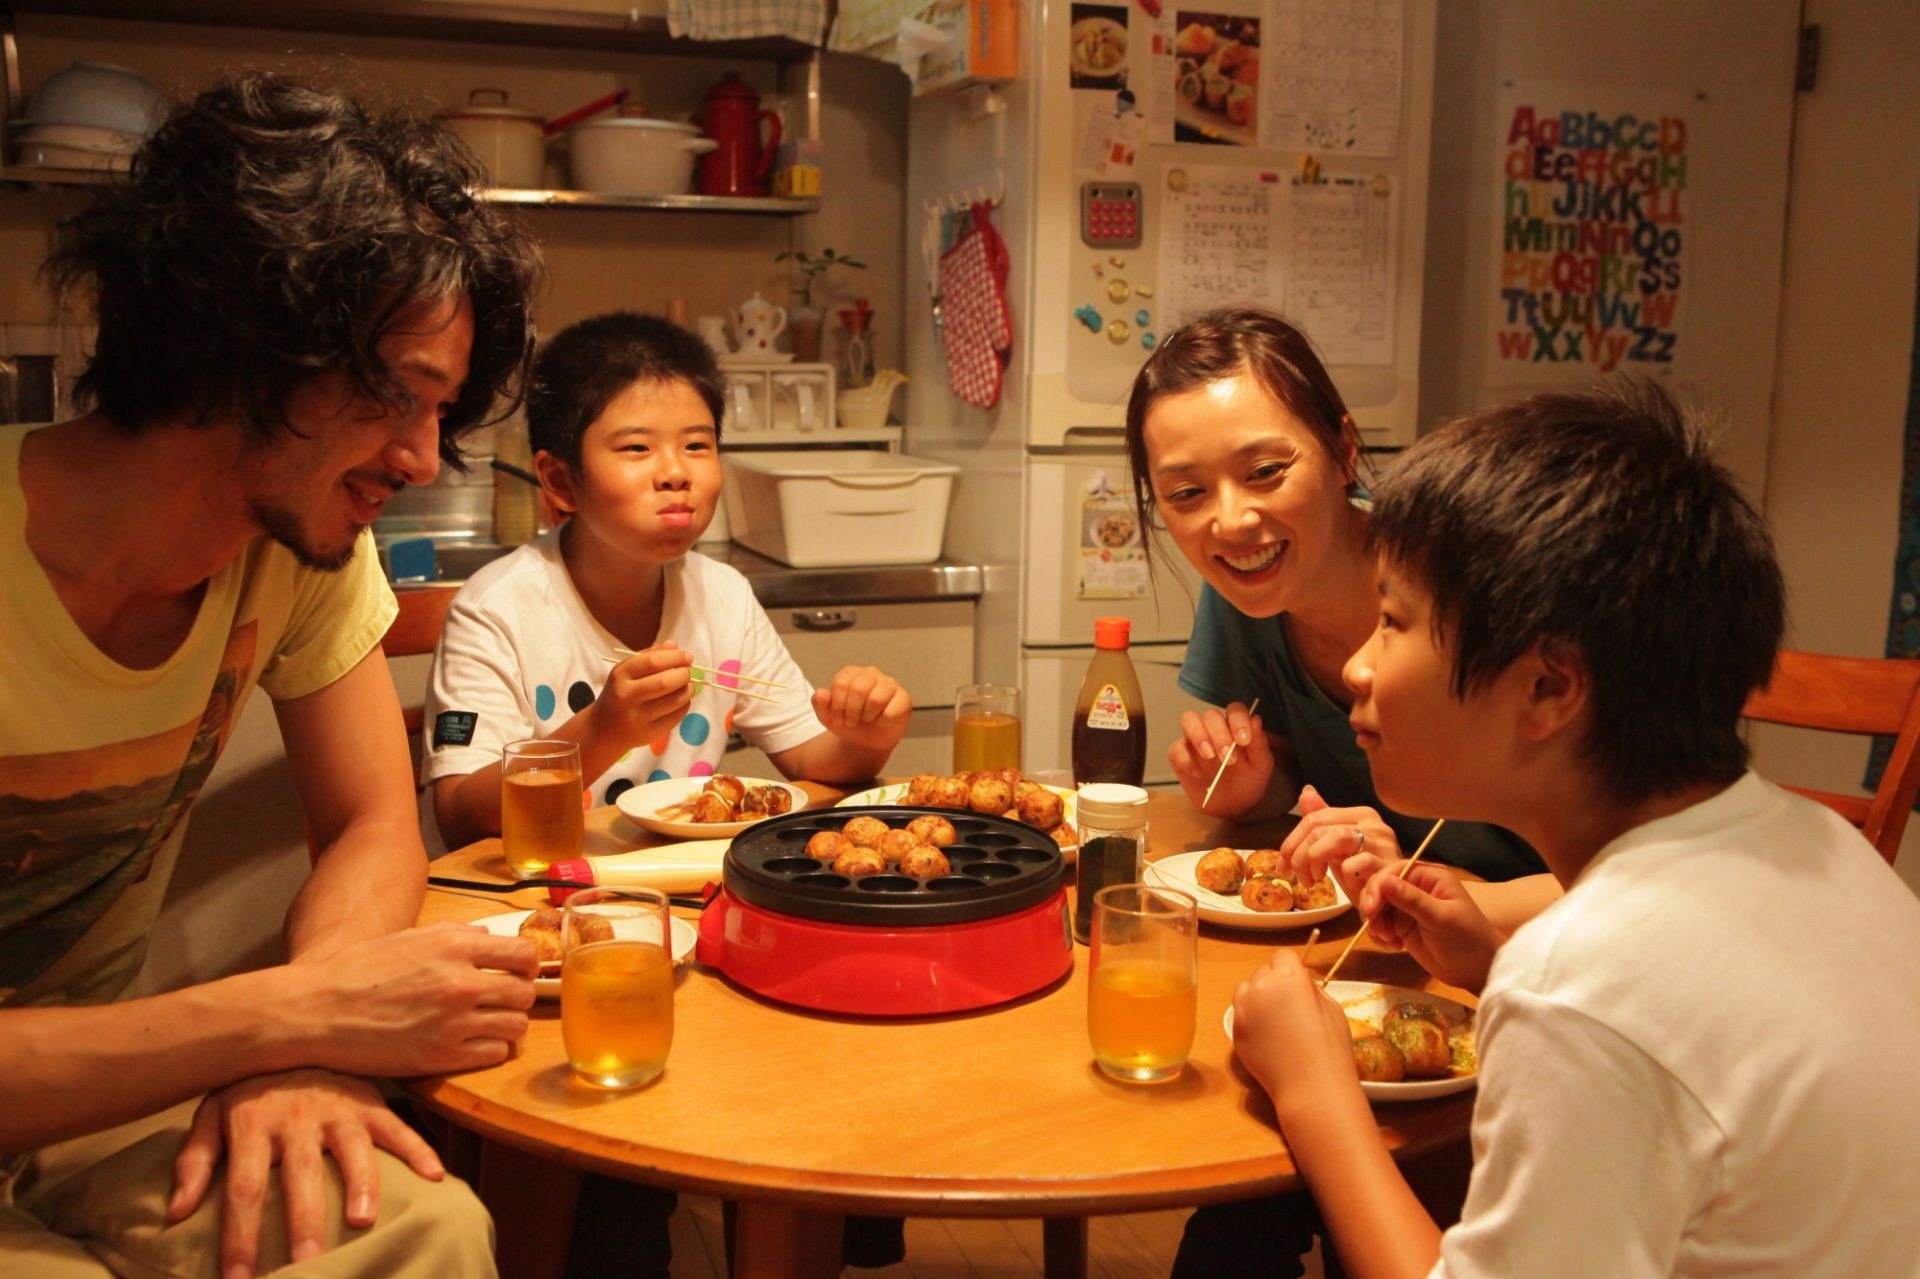 Jo Odagiri, Ohshiro Maeda, Nene Ohtsuka and Koki Maeda in Magnolia Pictures' I Wish (2012)